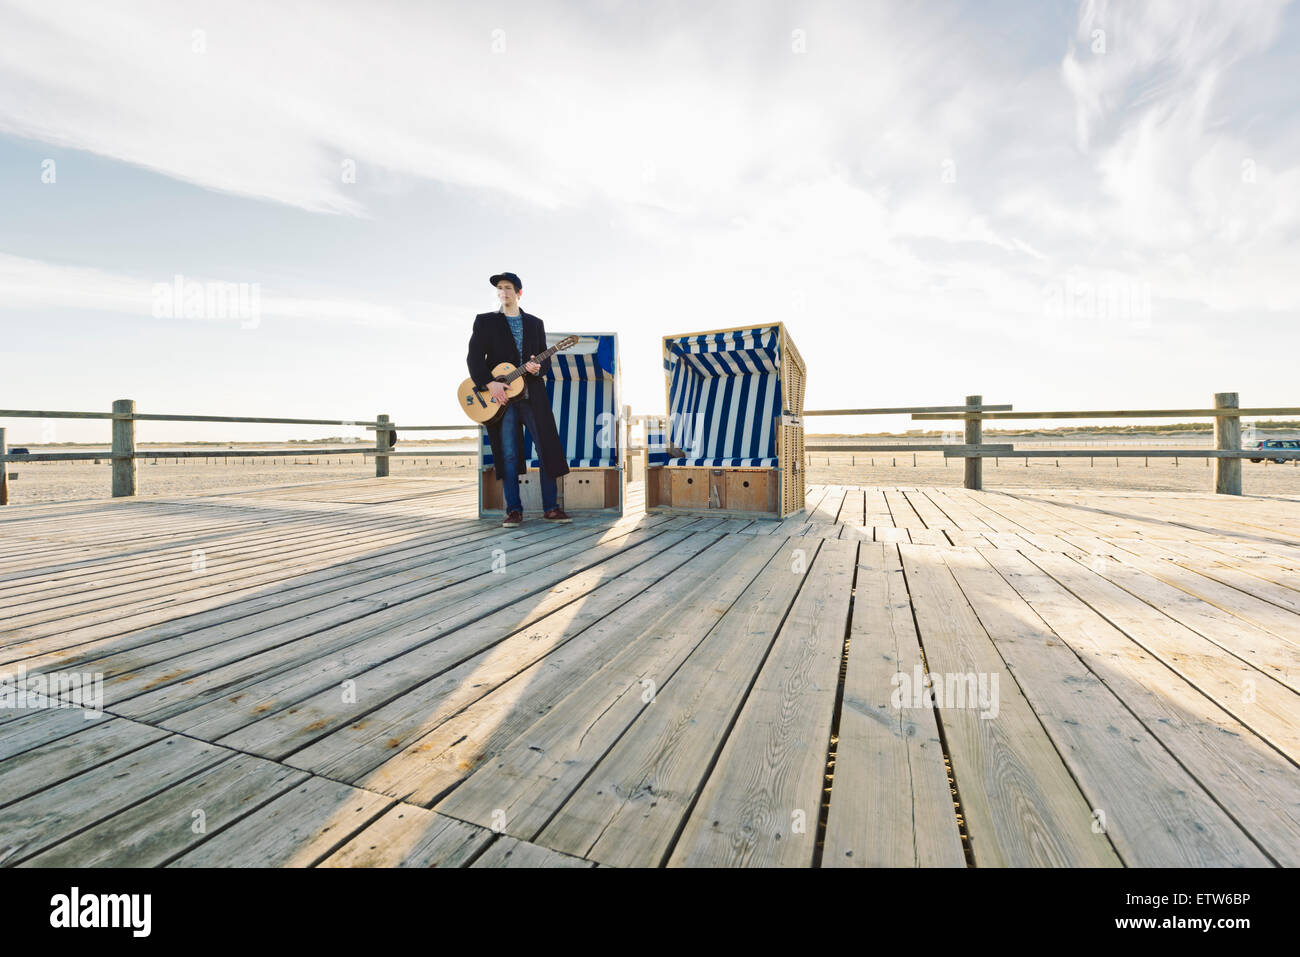 Alemania, Sankt Peter-Ording, adolescente con la guitarra de pie en frente de encapuchados, silla de playa Foto de stock